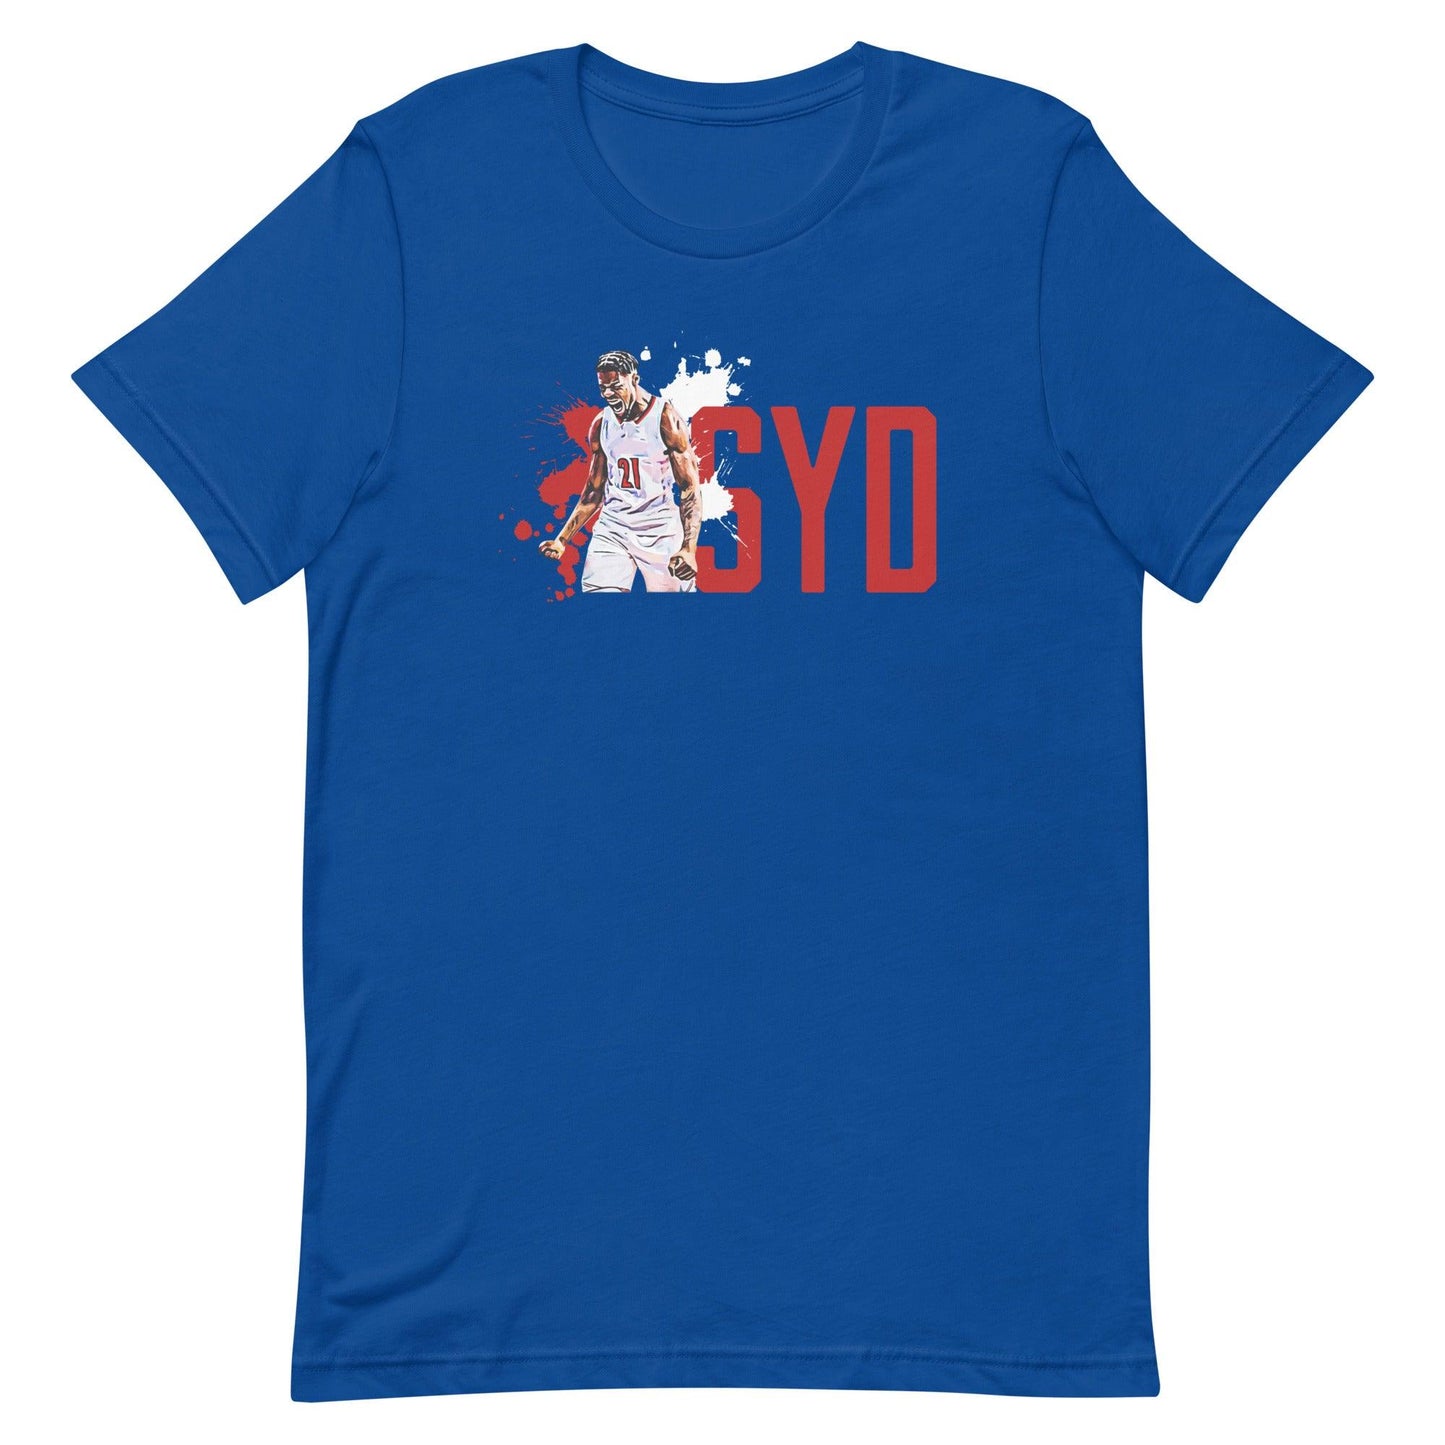 Sydney Curry "SYD" t-shirt - Fan Arch